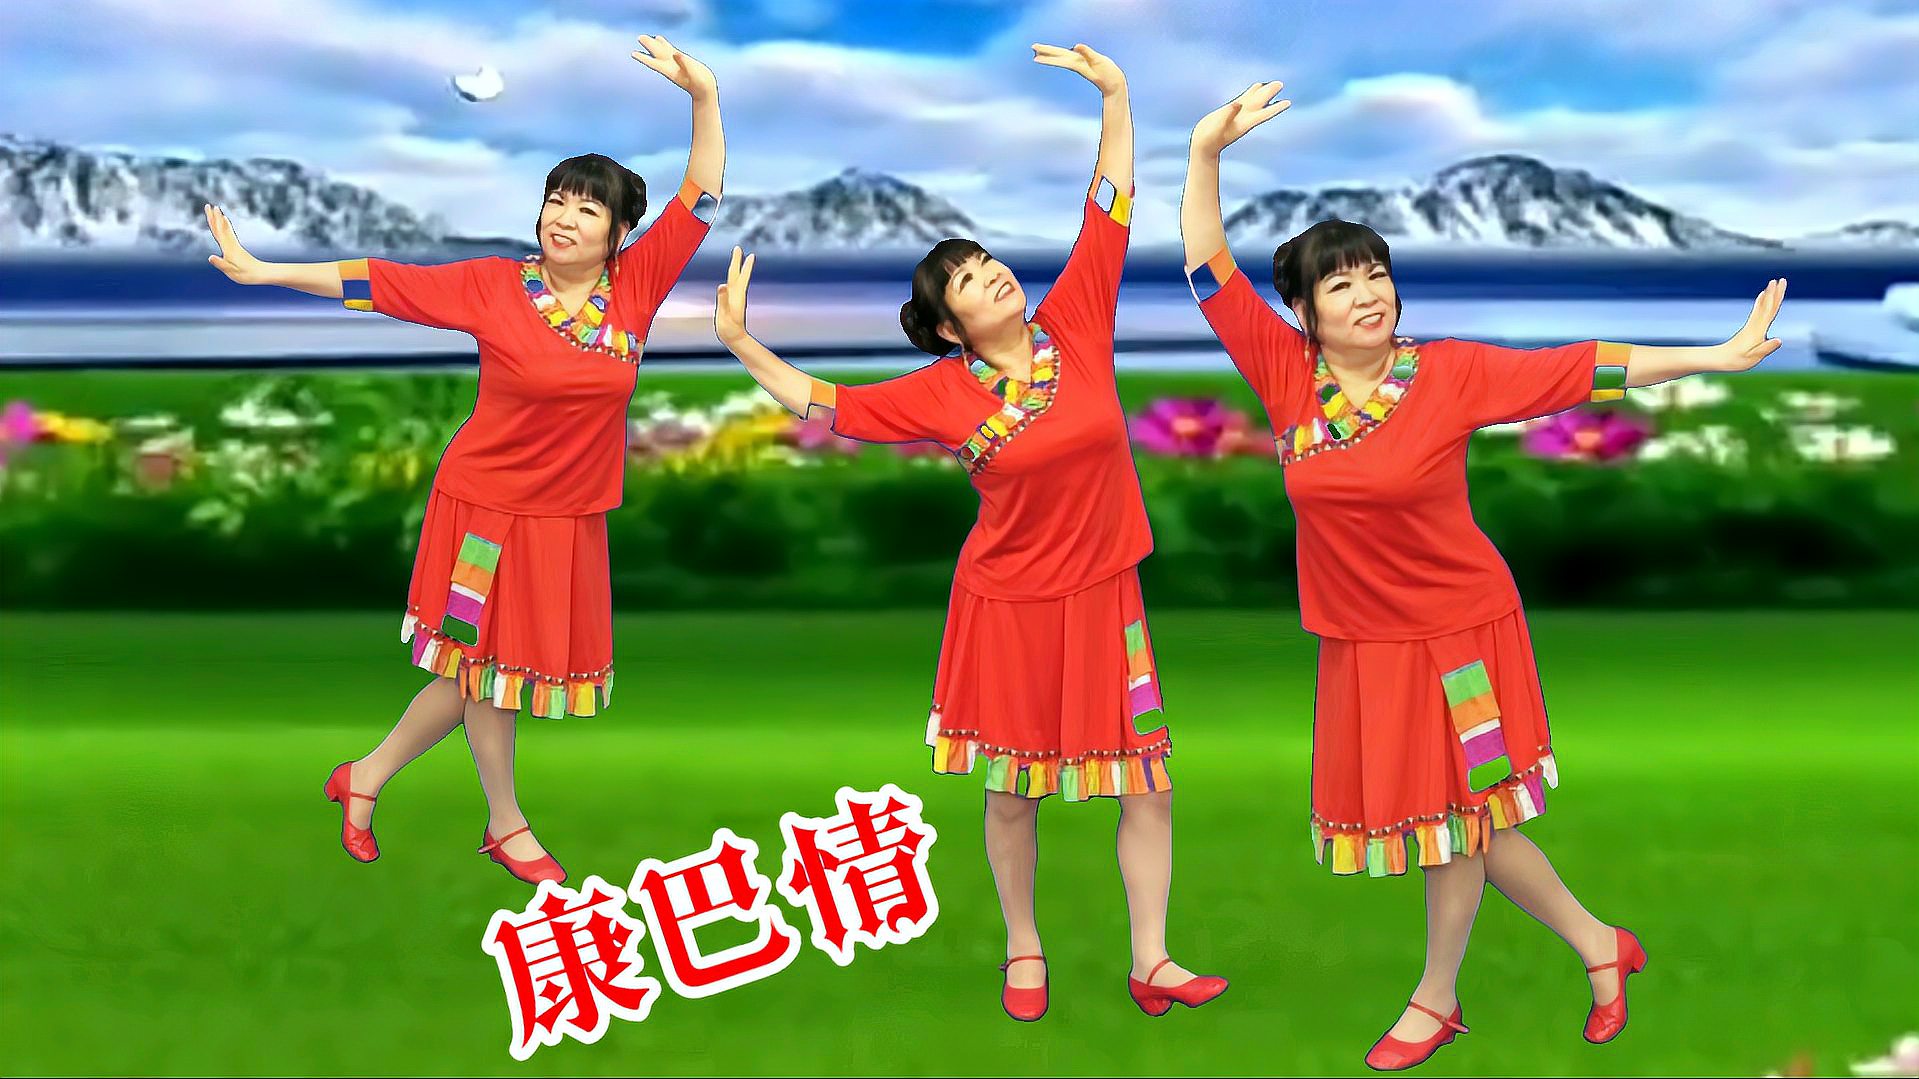 广场舞经典藏歌《康巴情》欢快的旋律优美的舞蹈激情飞扬动人心弦